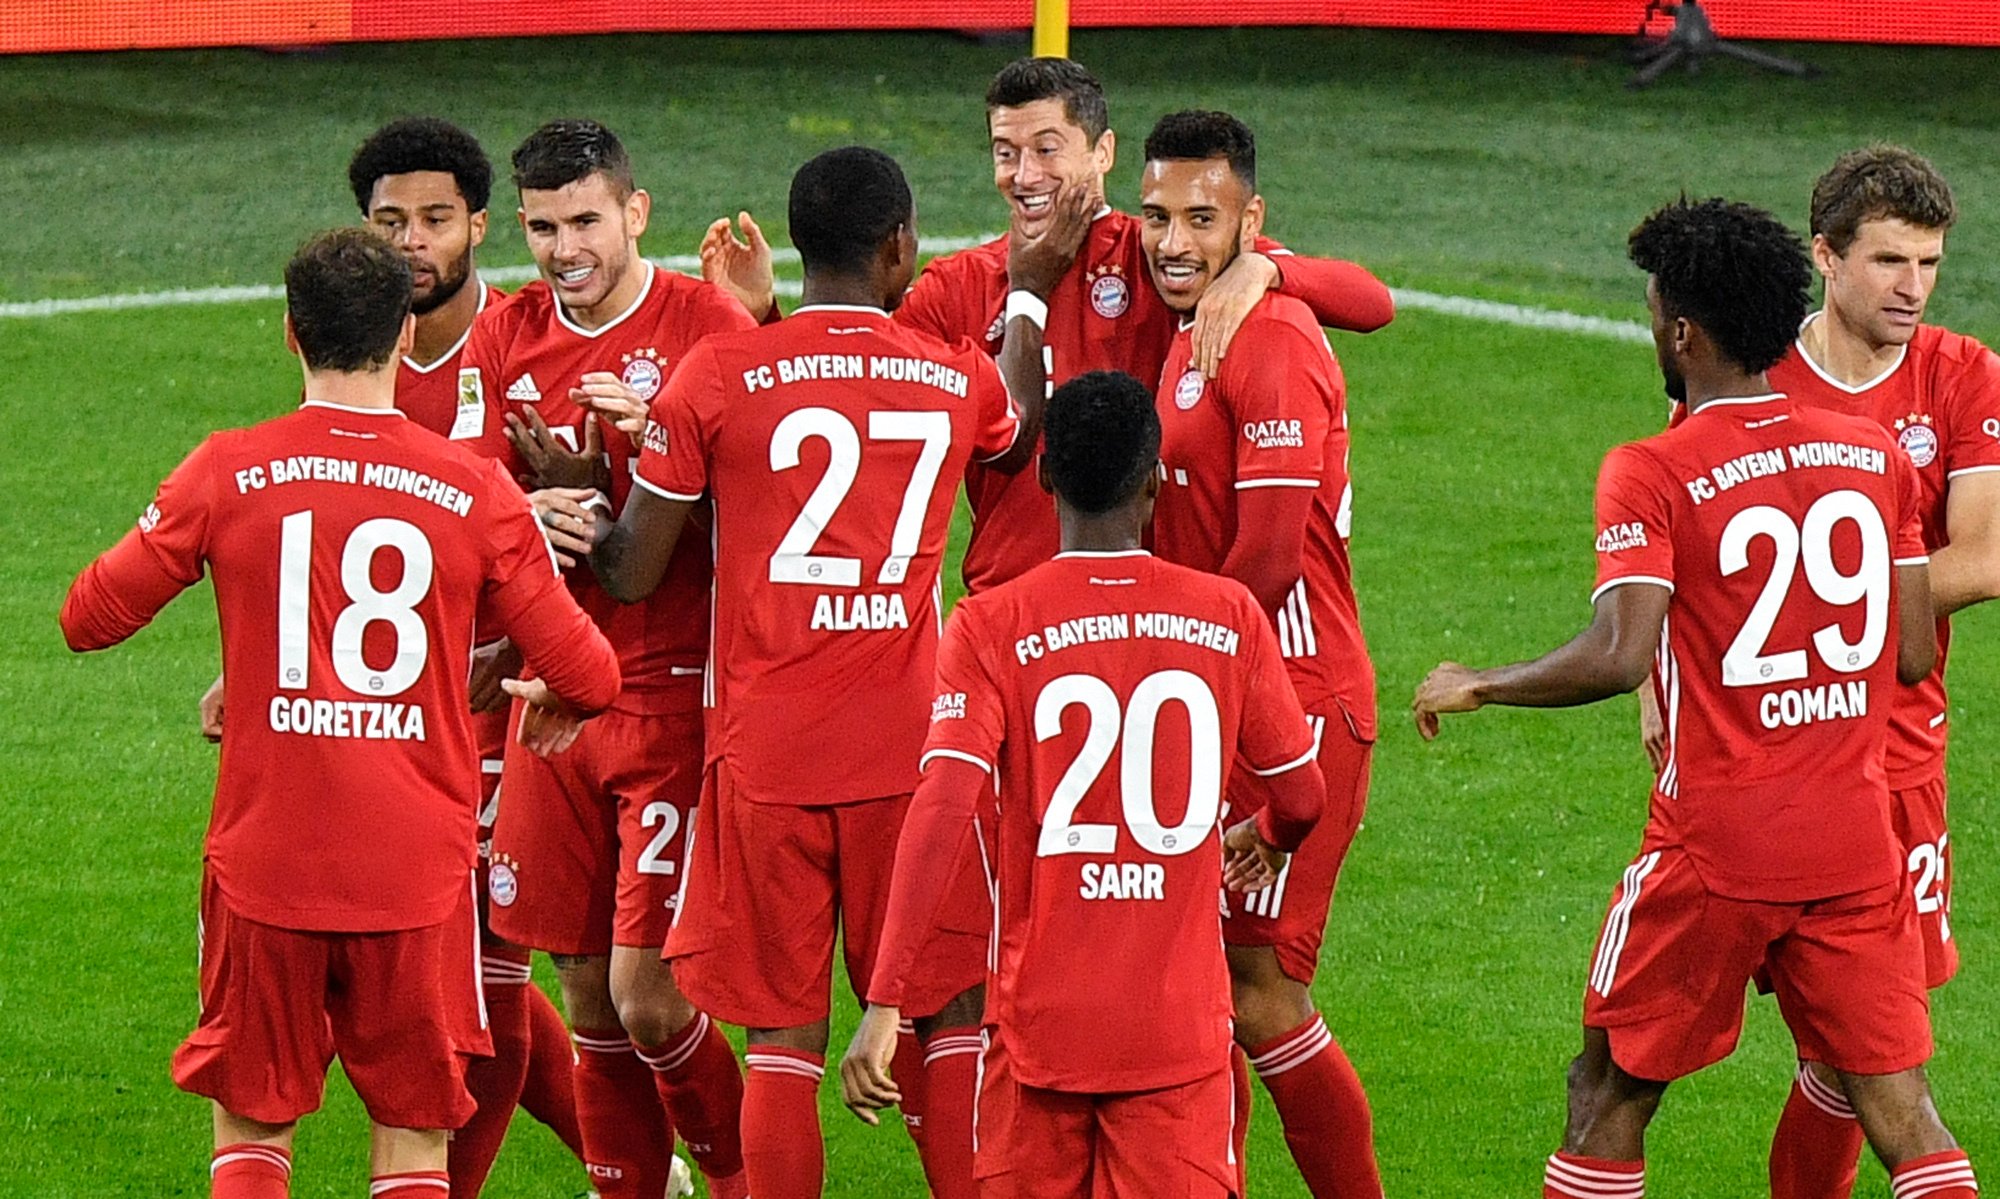 拜仁慕尼黑在本轮以3比2击败多特蒙德后，在双方于联赛近4次对决中收获全胜。（美联社照片）

